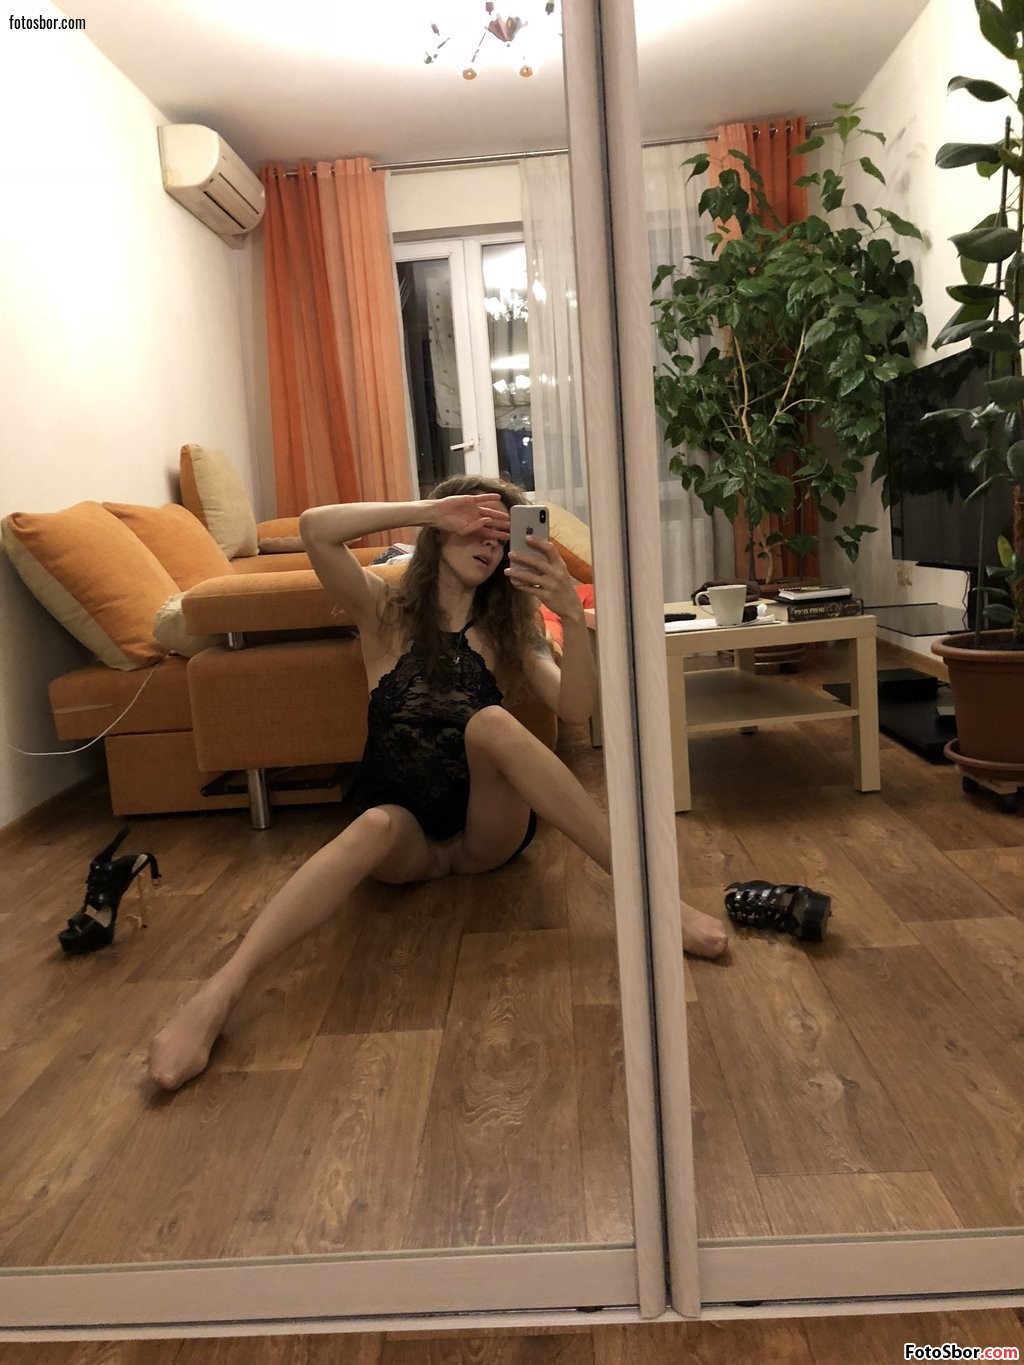 Порно фото Пьяная худая подруга в коротком платье сидит на полу смотреть бесплатно